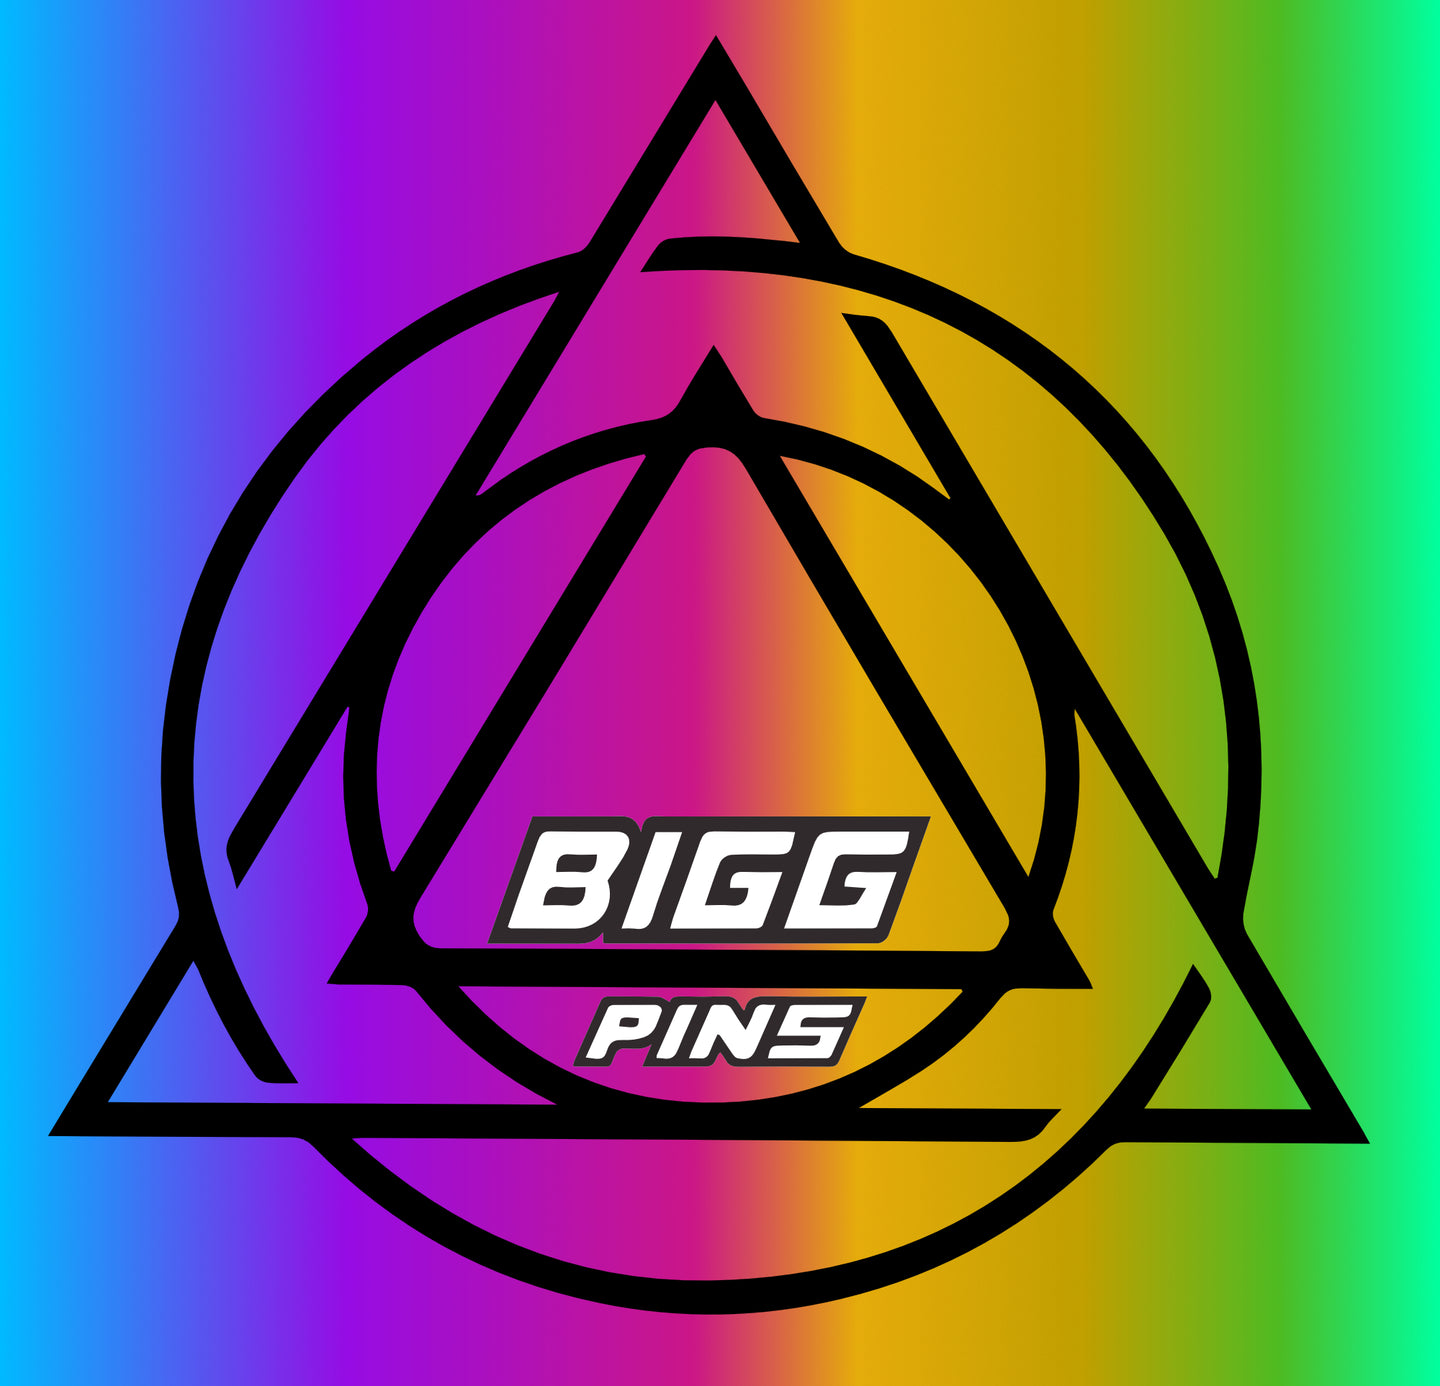 BIGG Pins